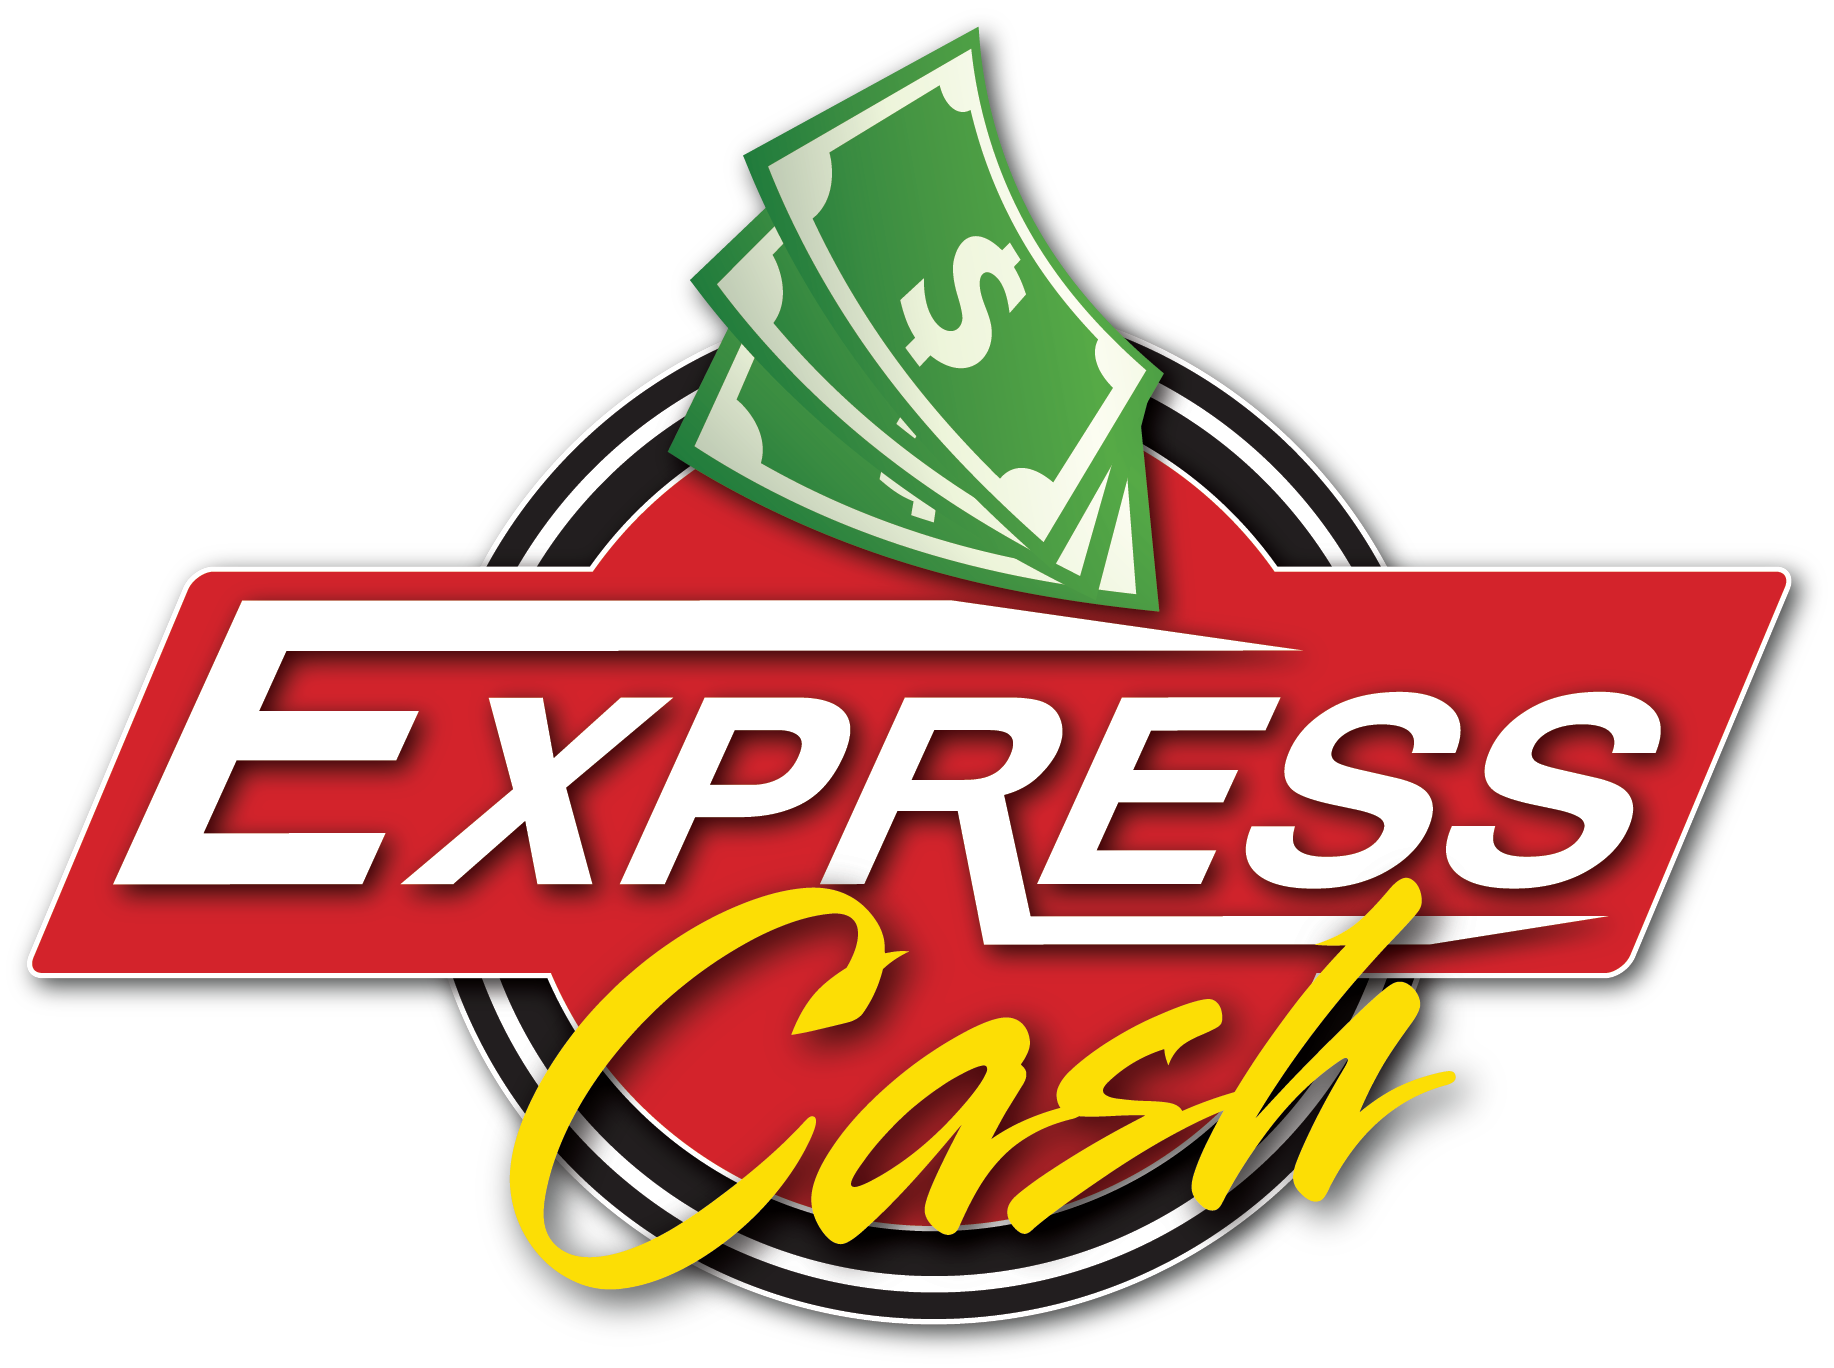 EXPRESS CASH